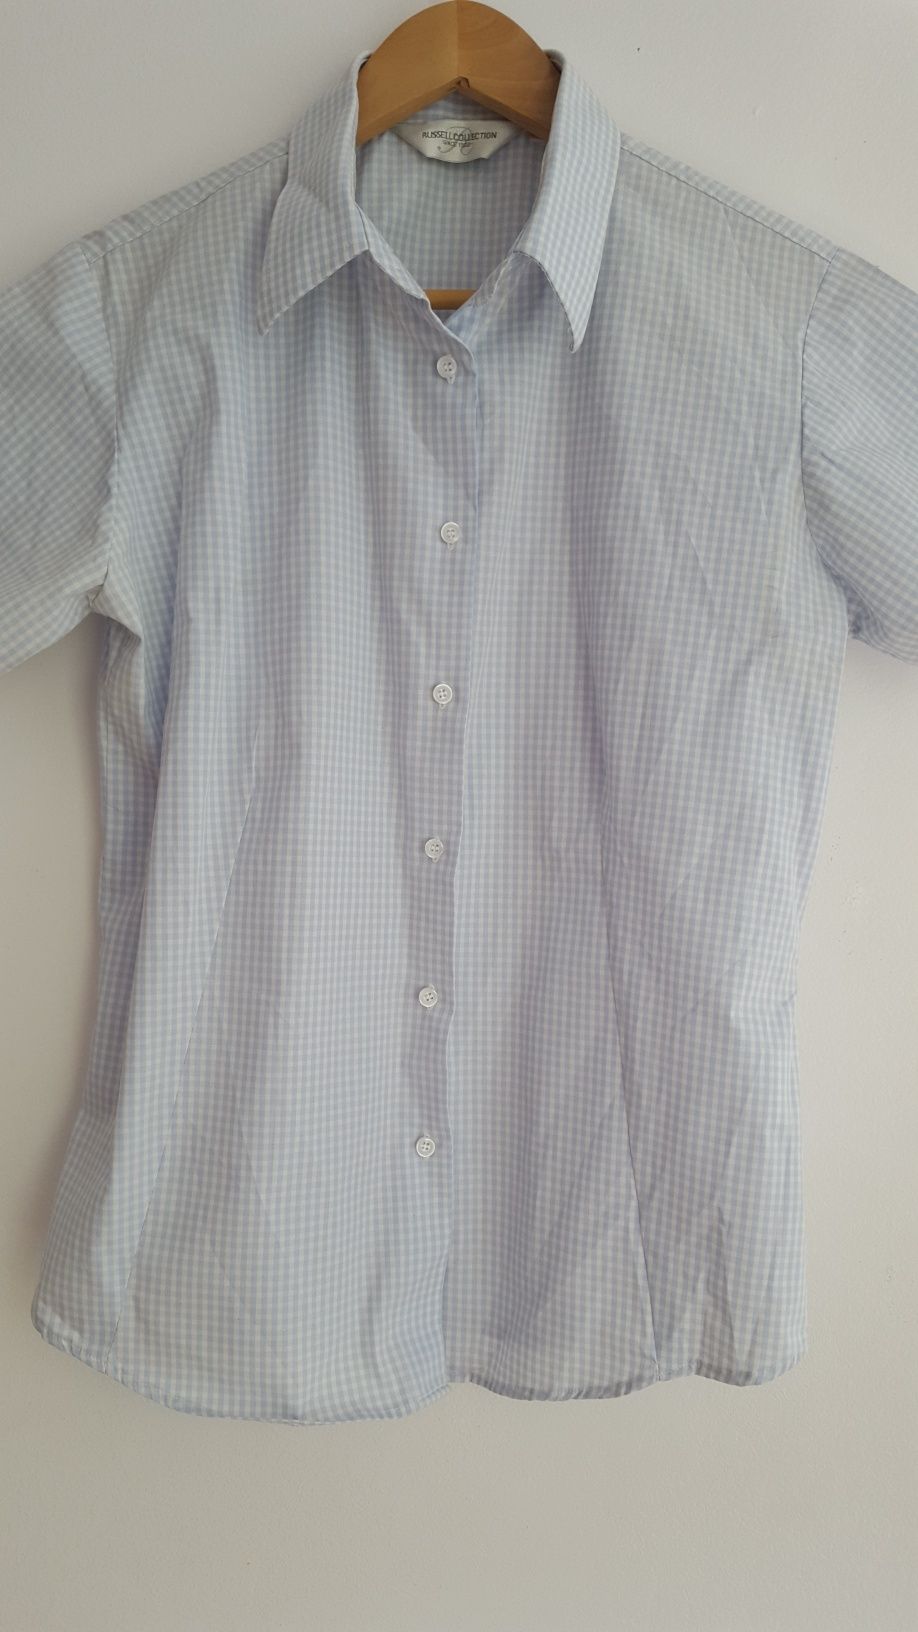 Bluzka koszulowa błękitna w drobną krateczkę, bawełna, M